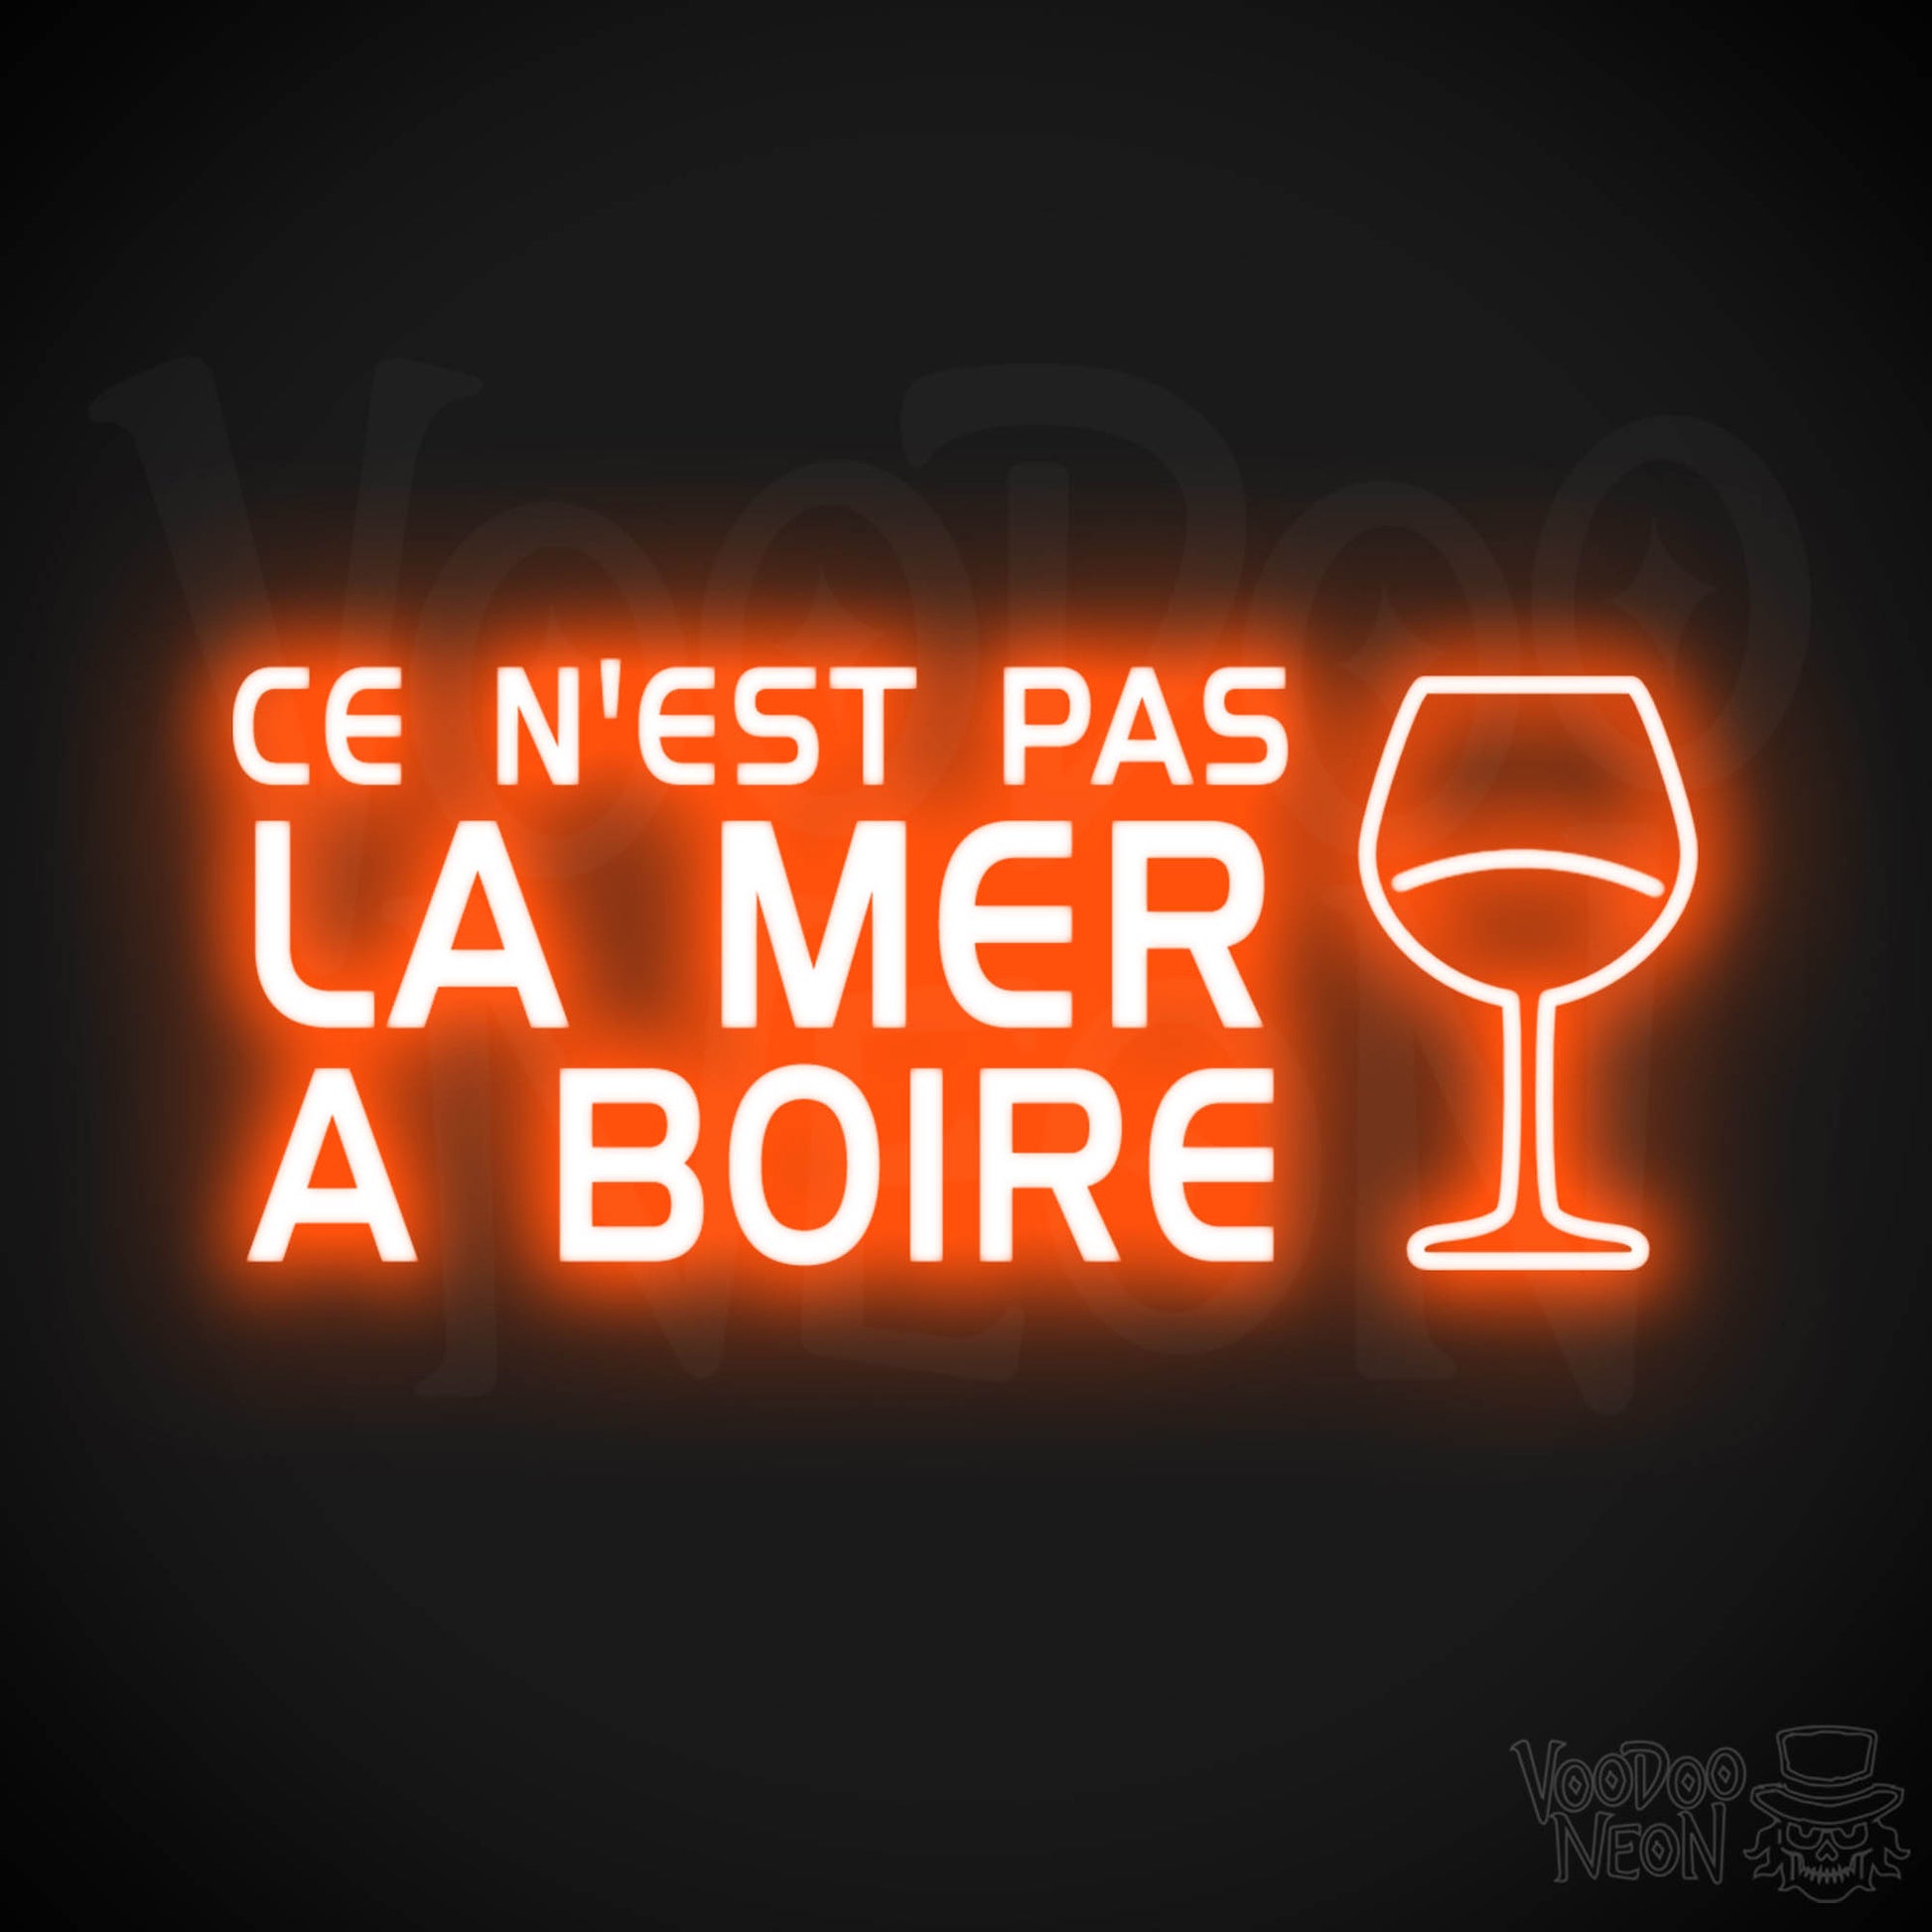 Ce N'est Pas La Mer a Boire Neon Sign - LED Lights - Color Orange